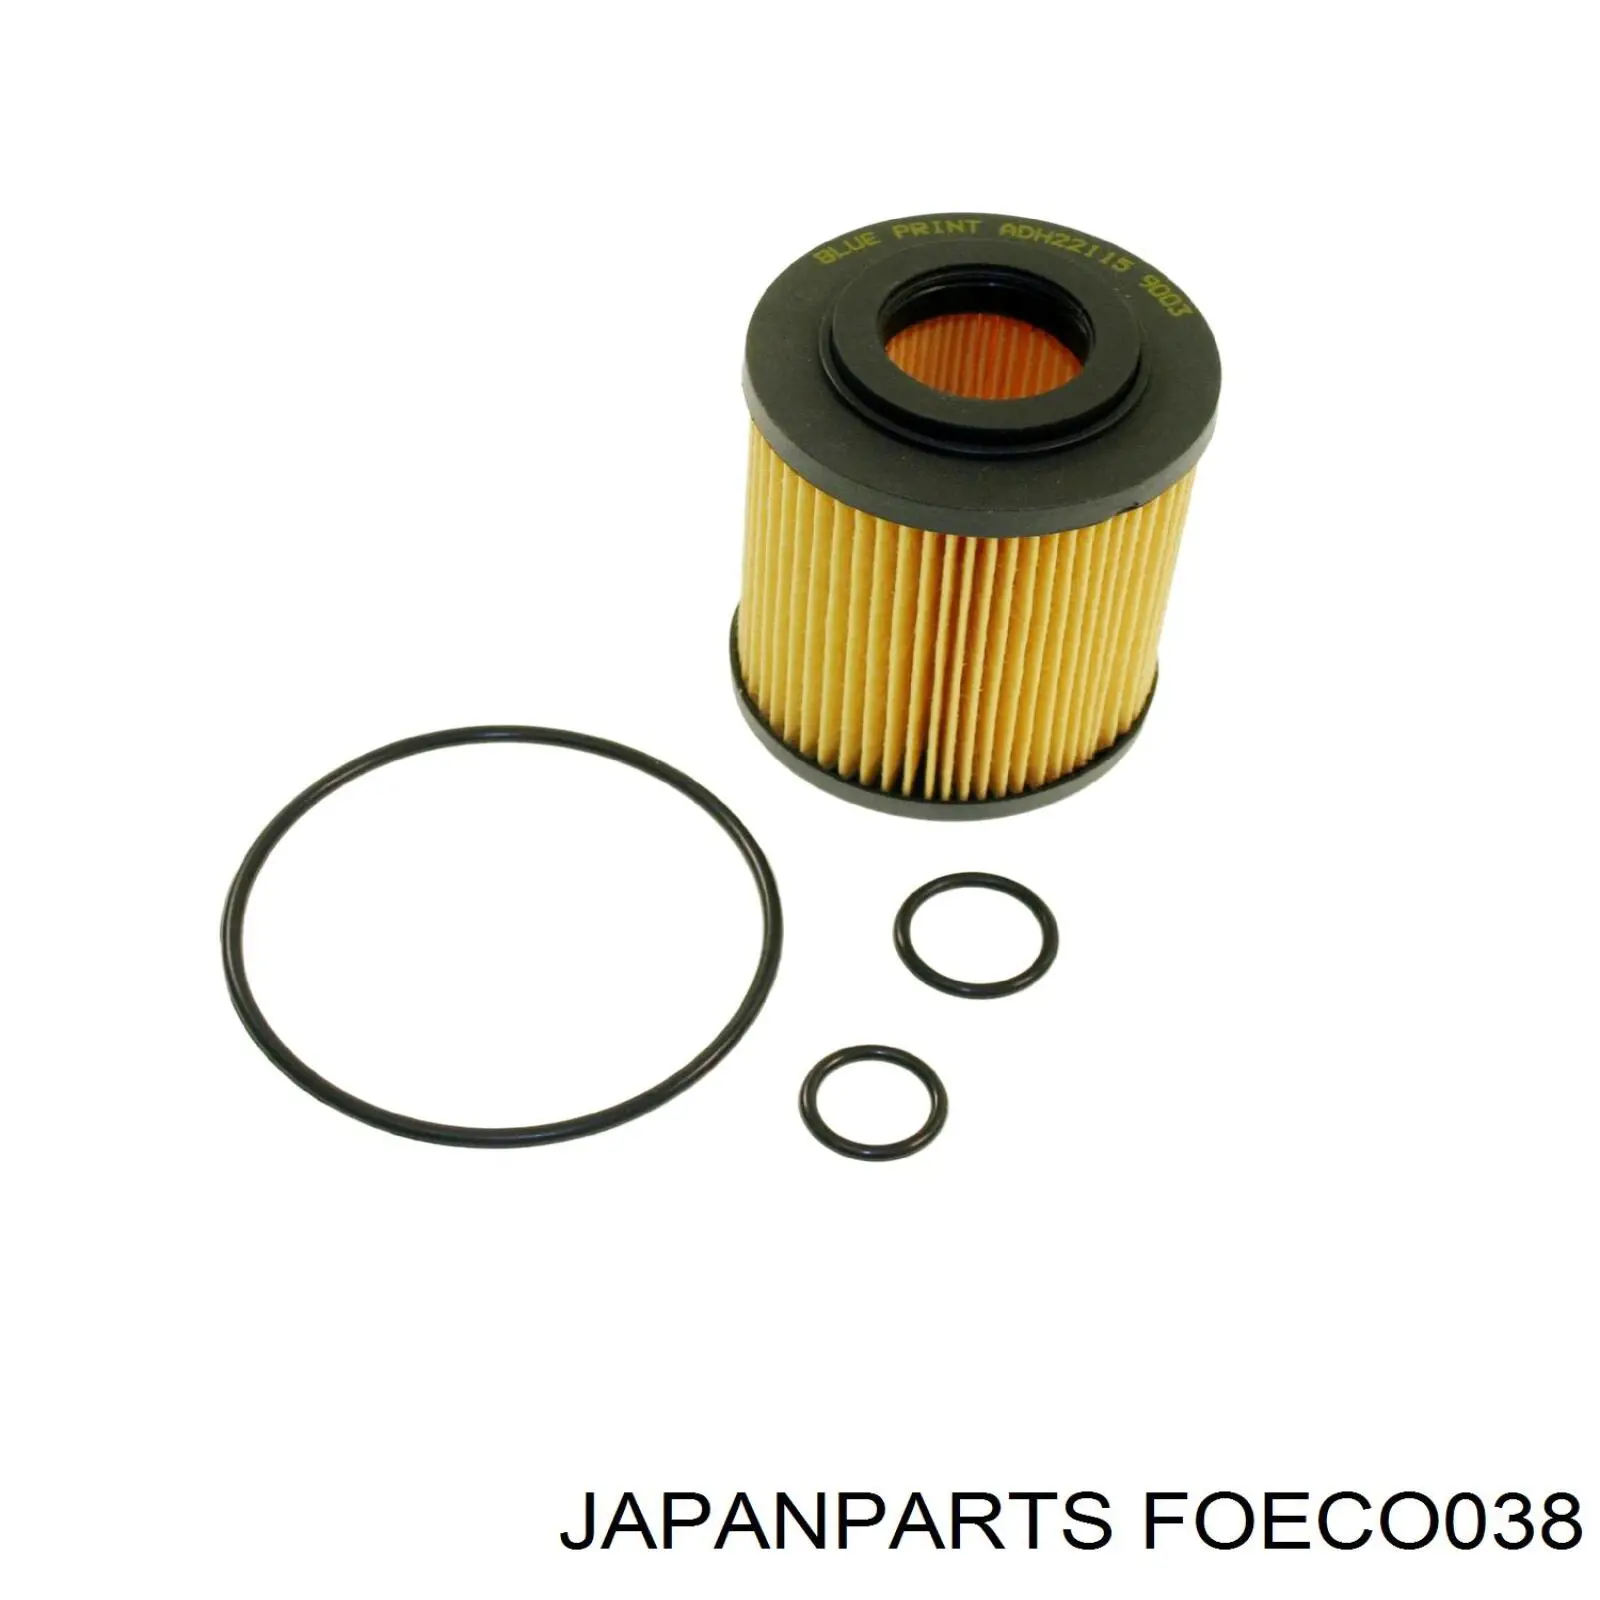 FOECO038 Japan Parts filtro de aceite